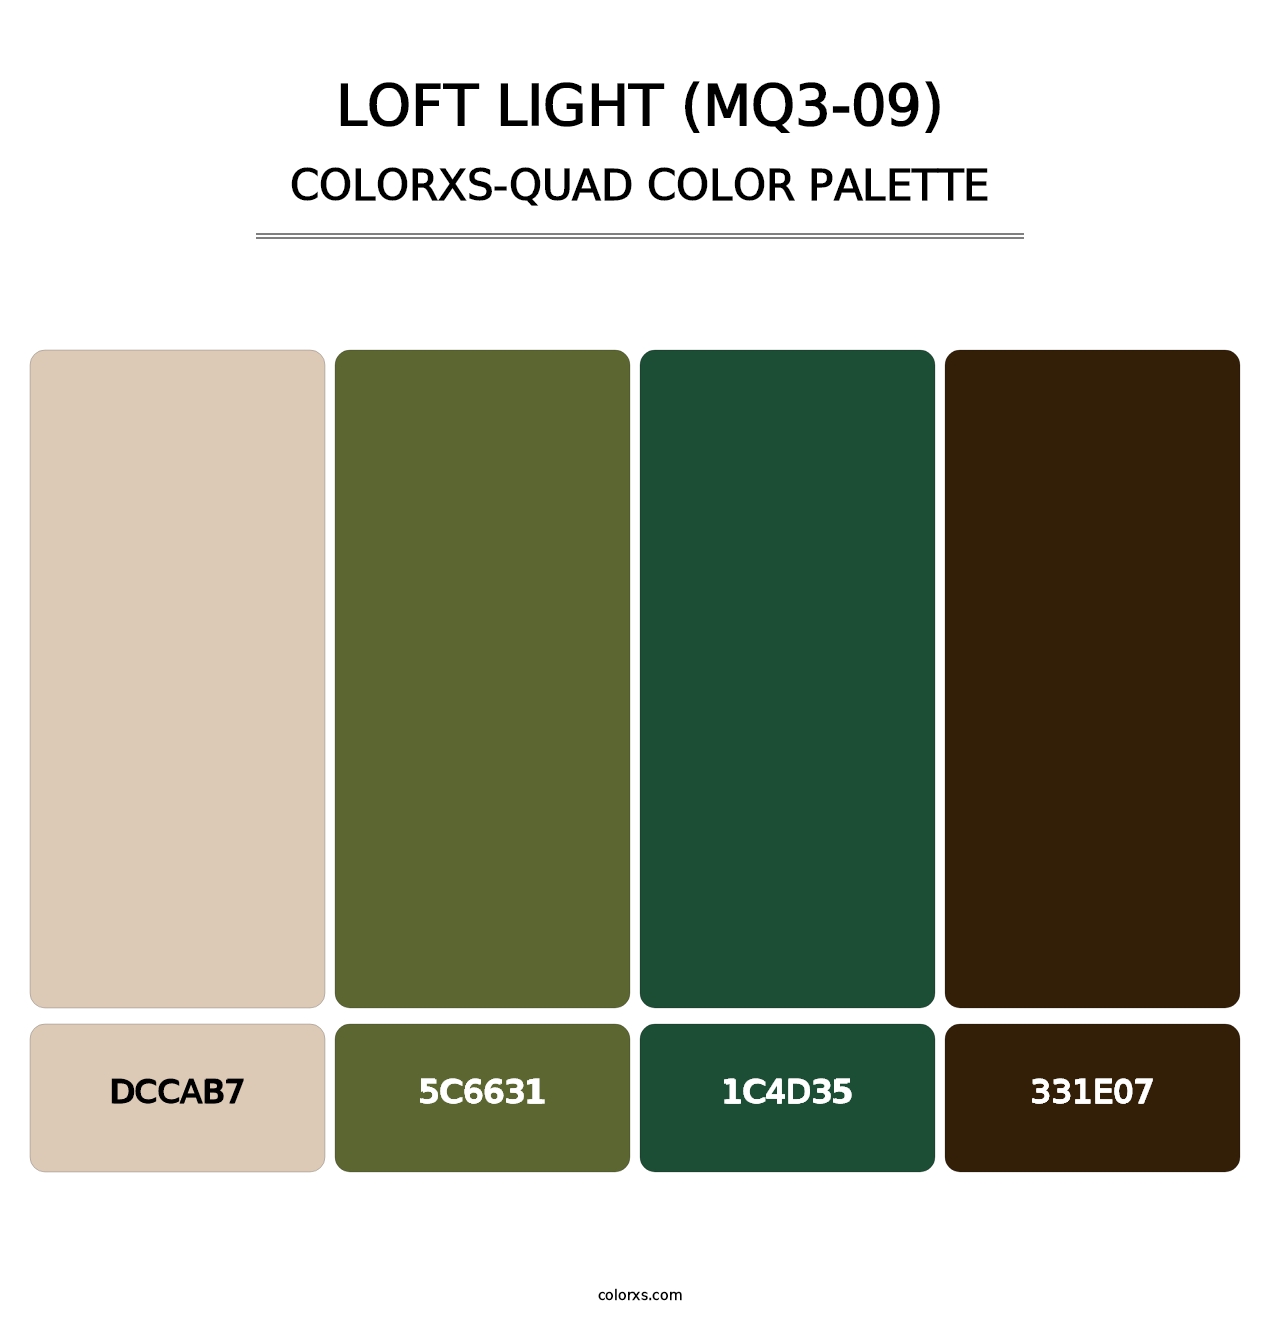 Loft Light (MQ3-09) - Colorxs Quad Palette